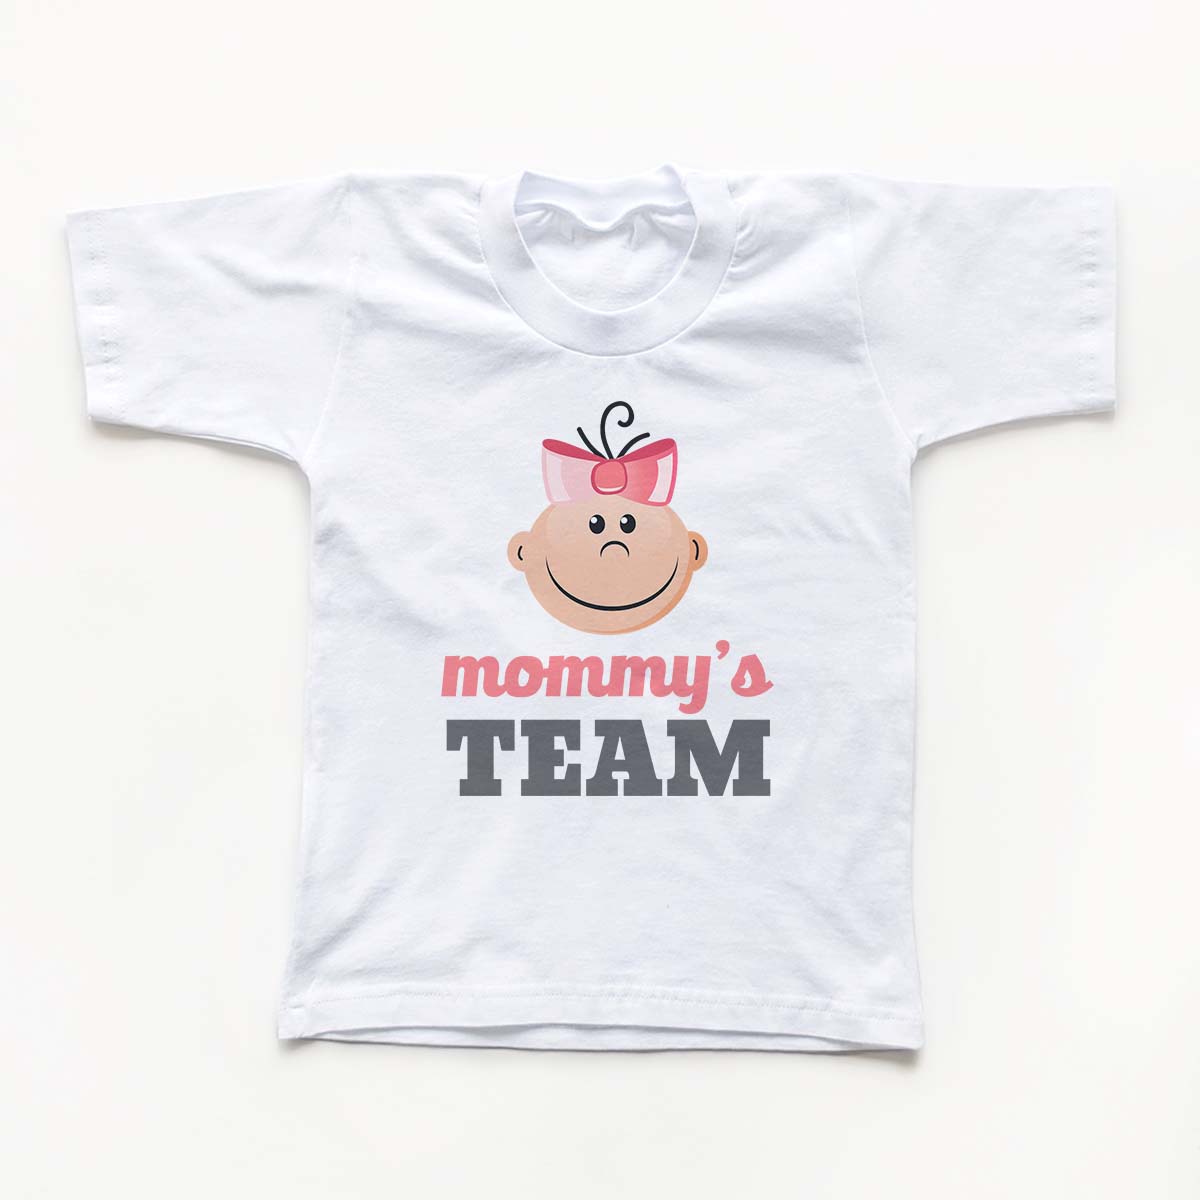 Tricouri copii - Mommy's Team1